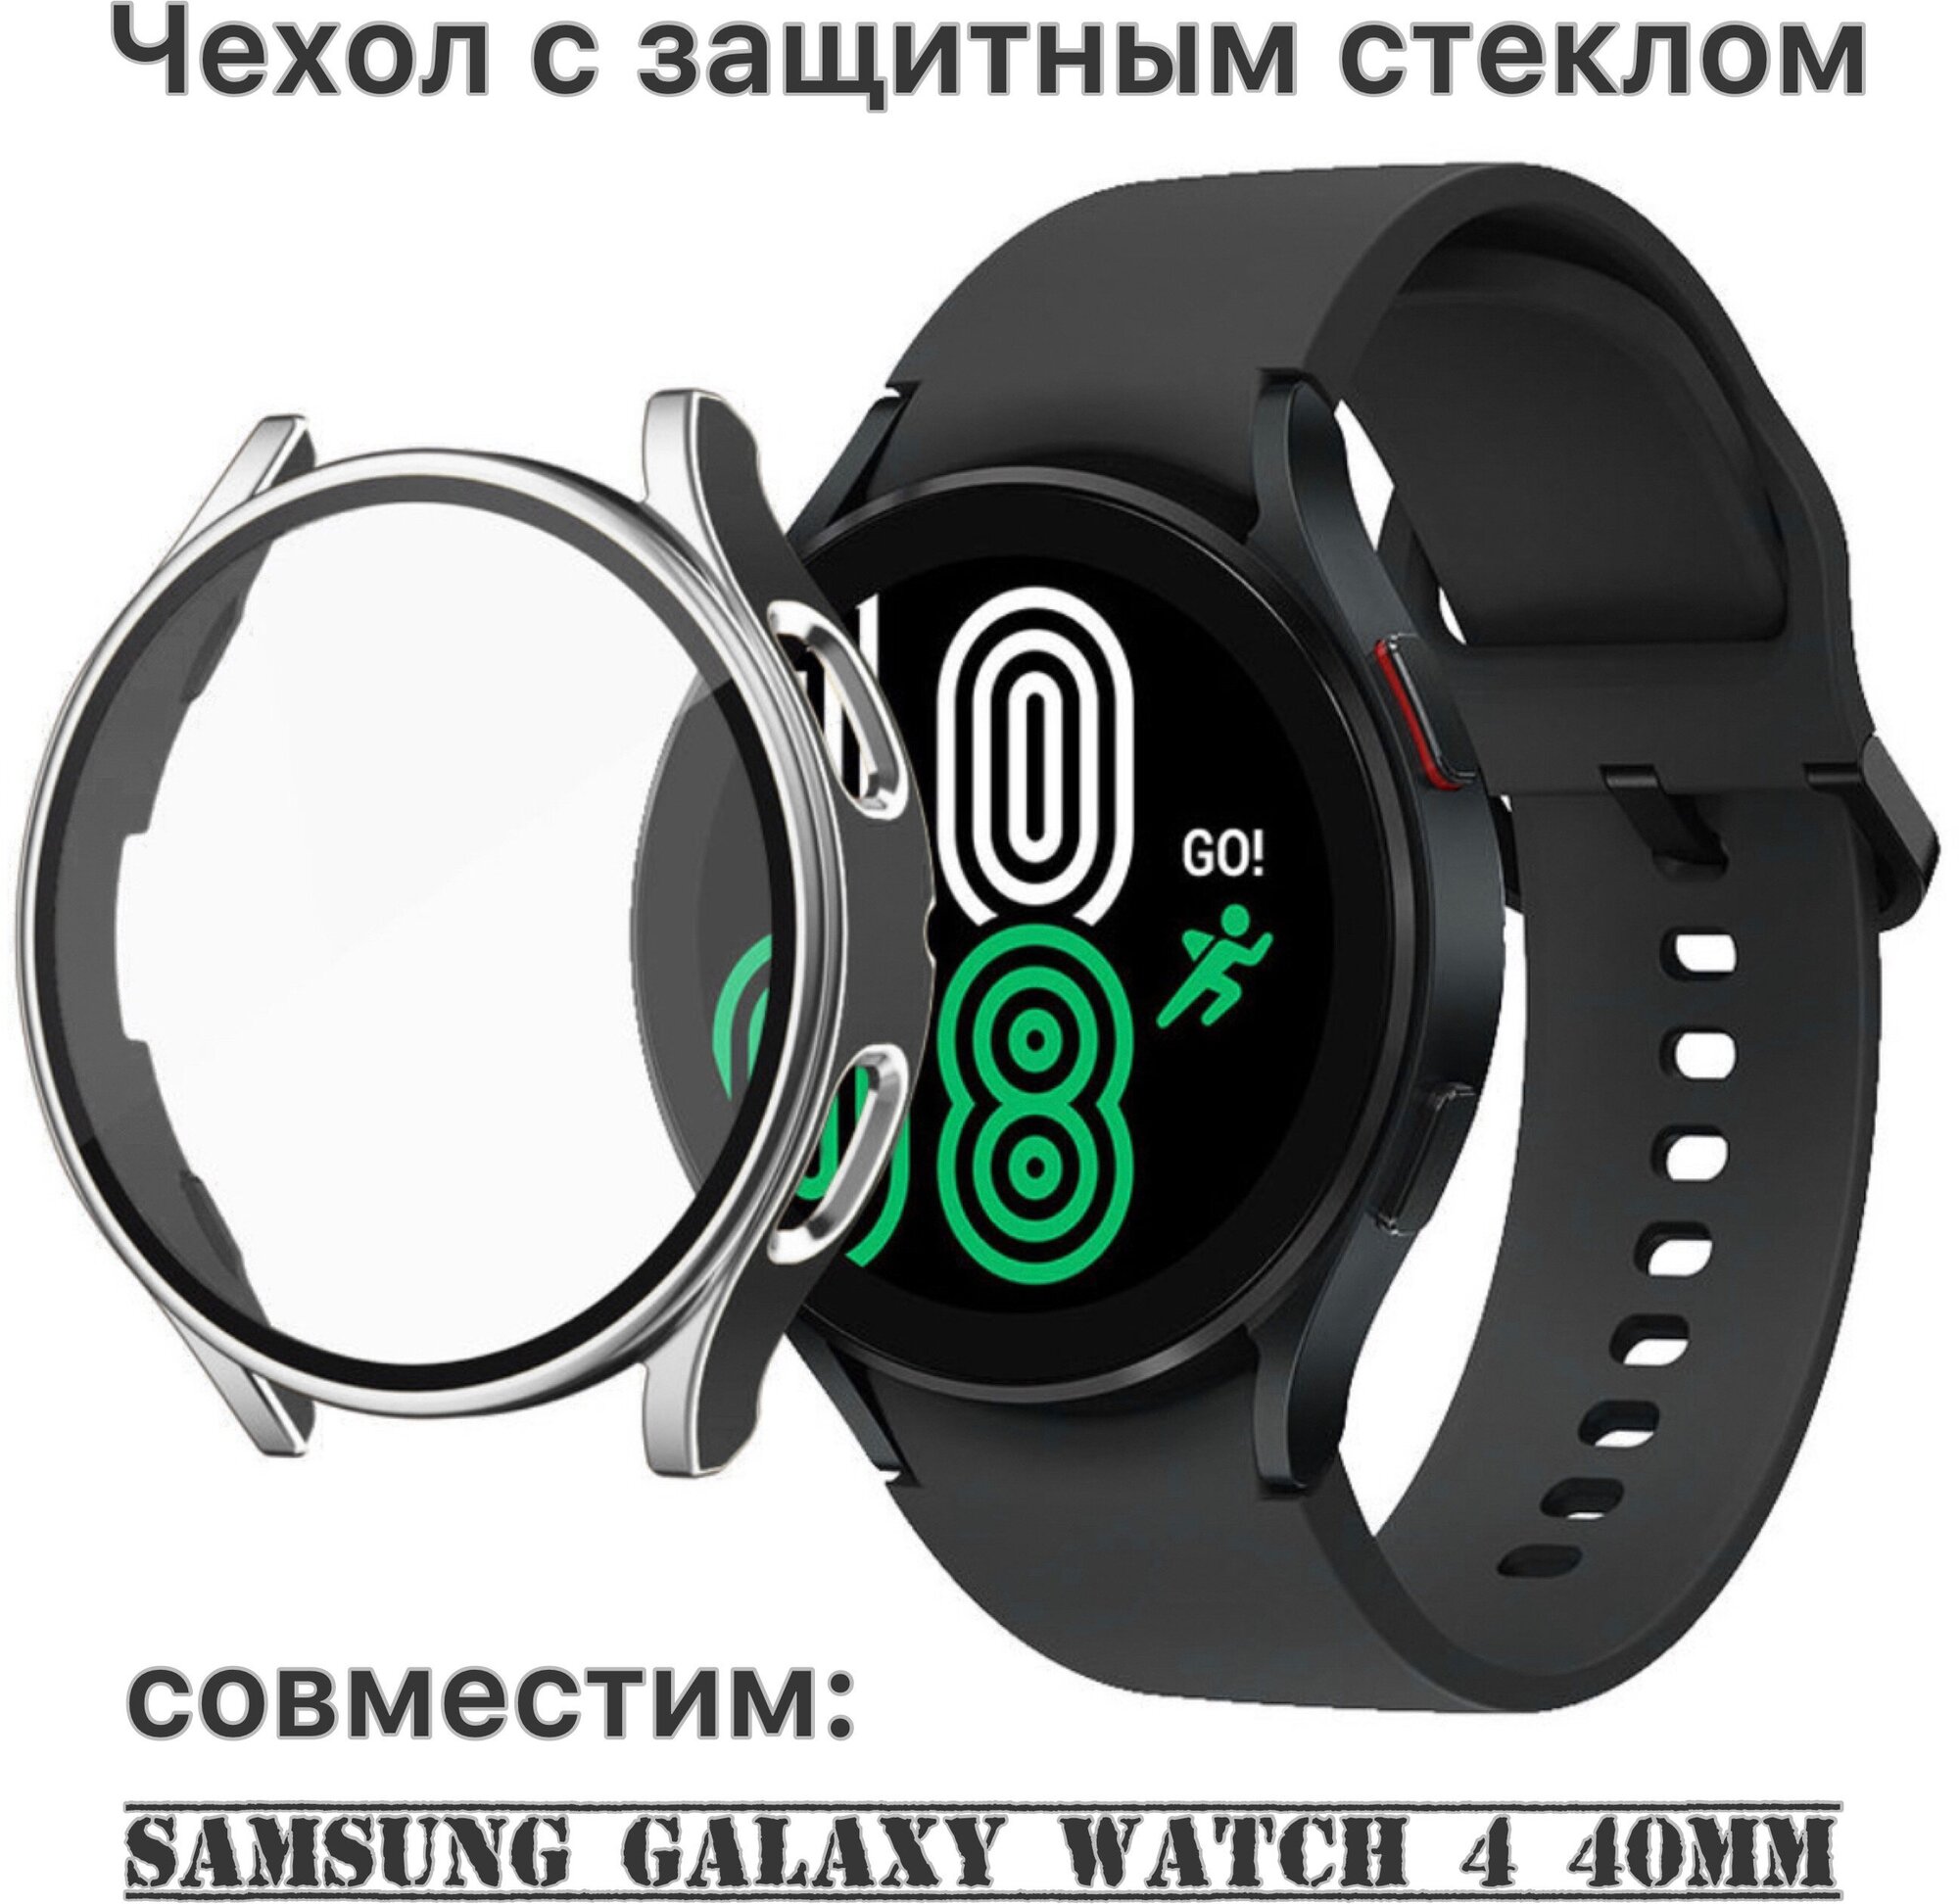 Защитный чехол со стеклом для Samsung Galaxy Watch 4 (40 mm) серебро-черный